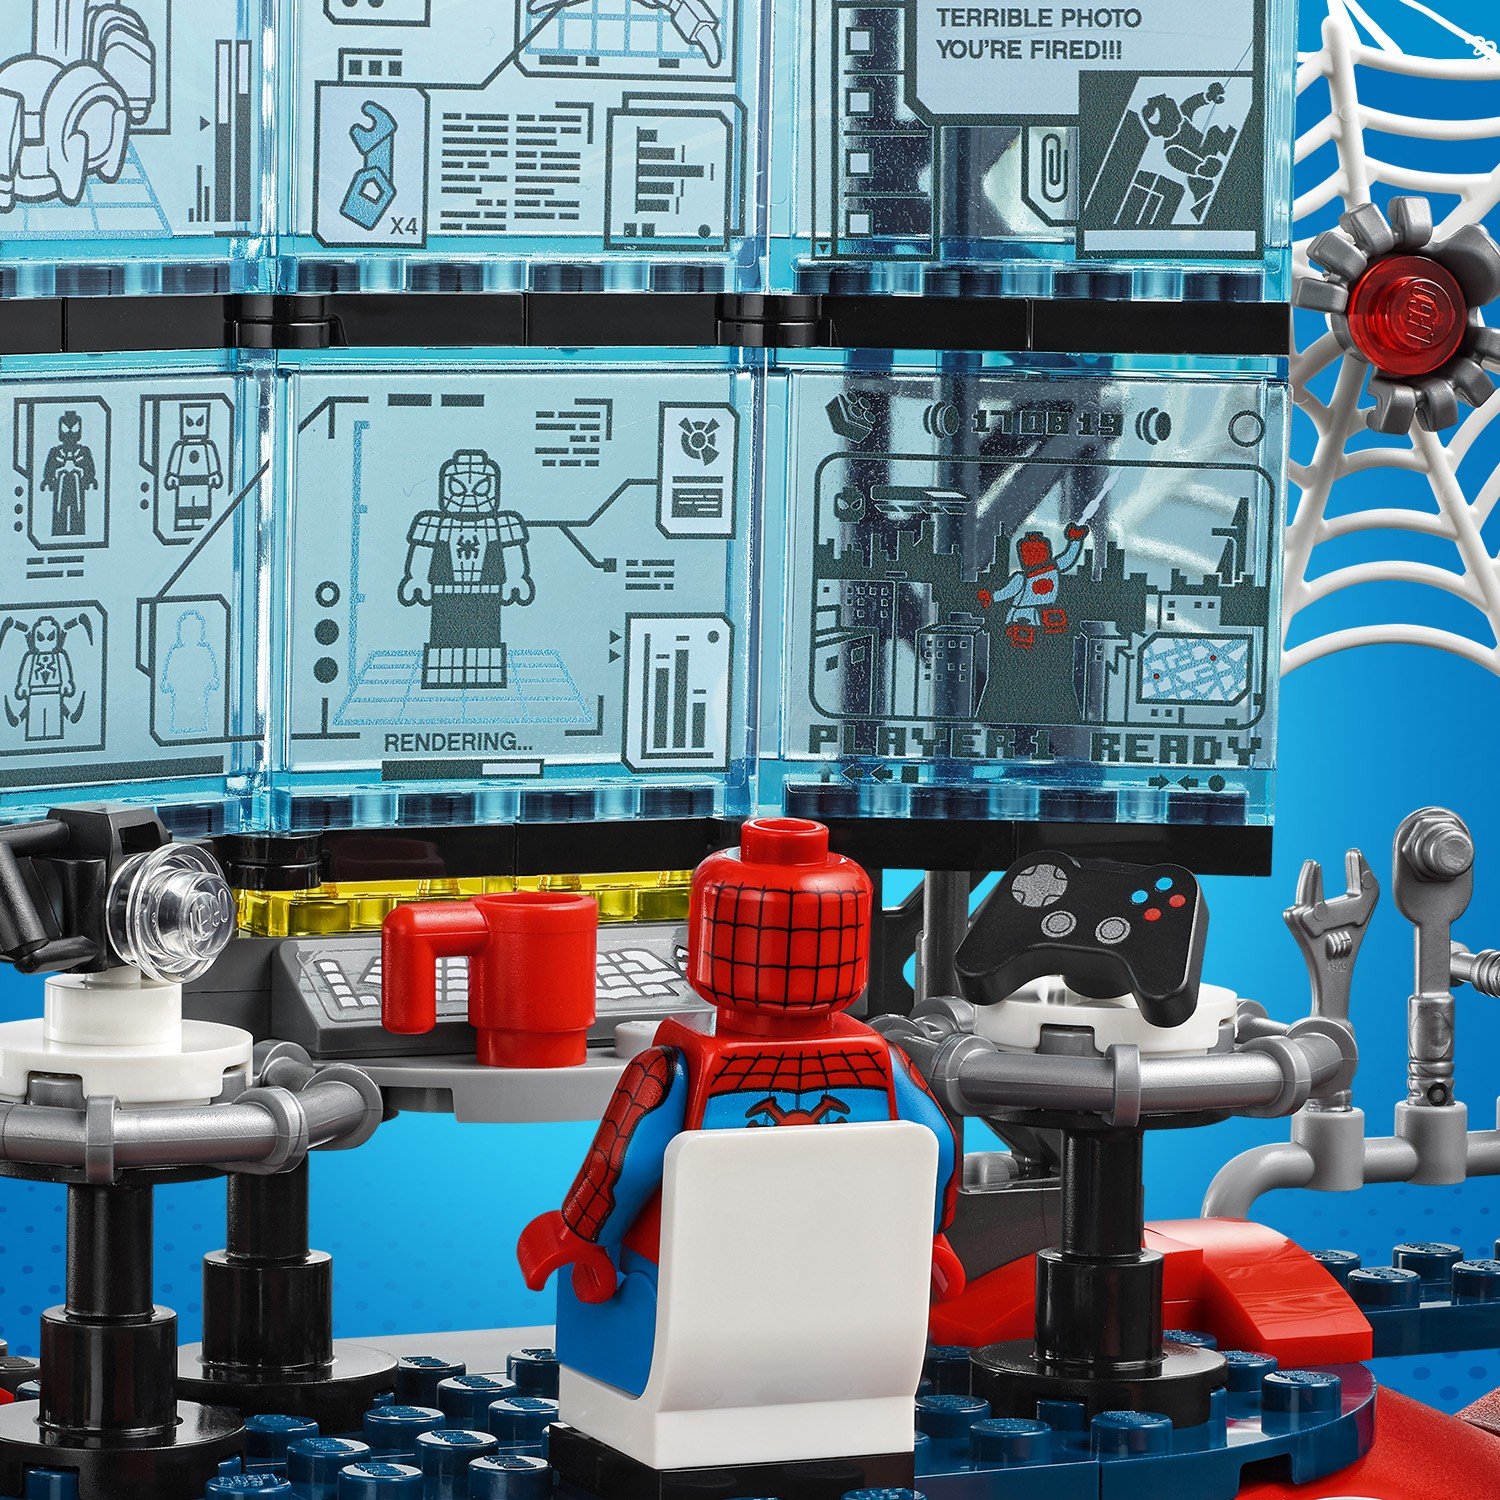 Lego Super Heroes 76175 Нападение на мастерскую паука